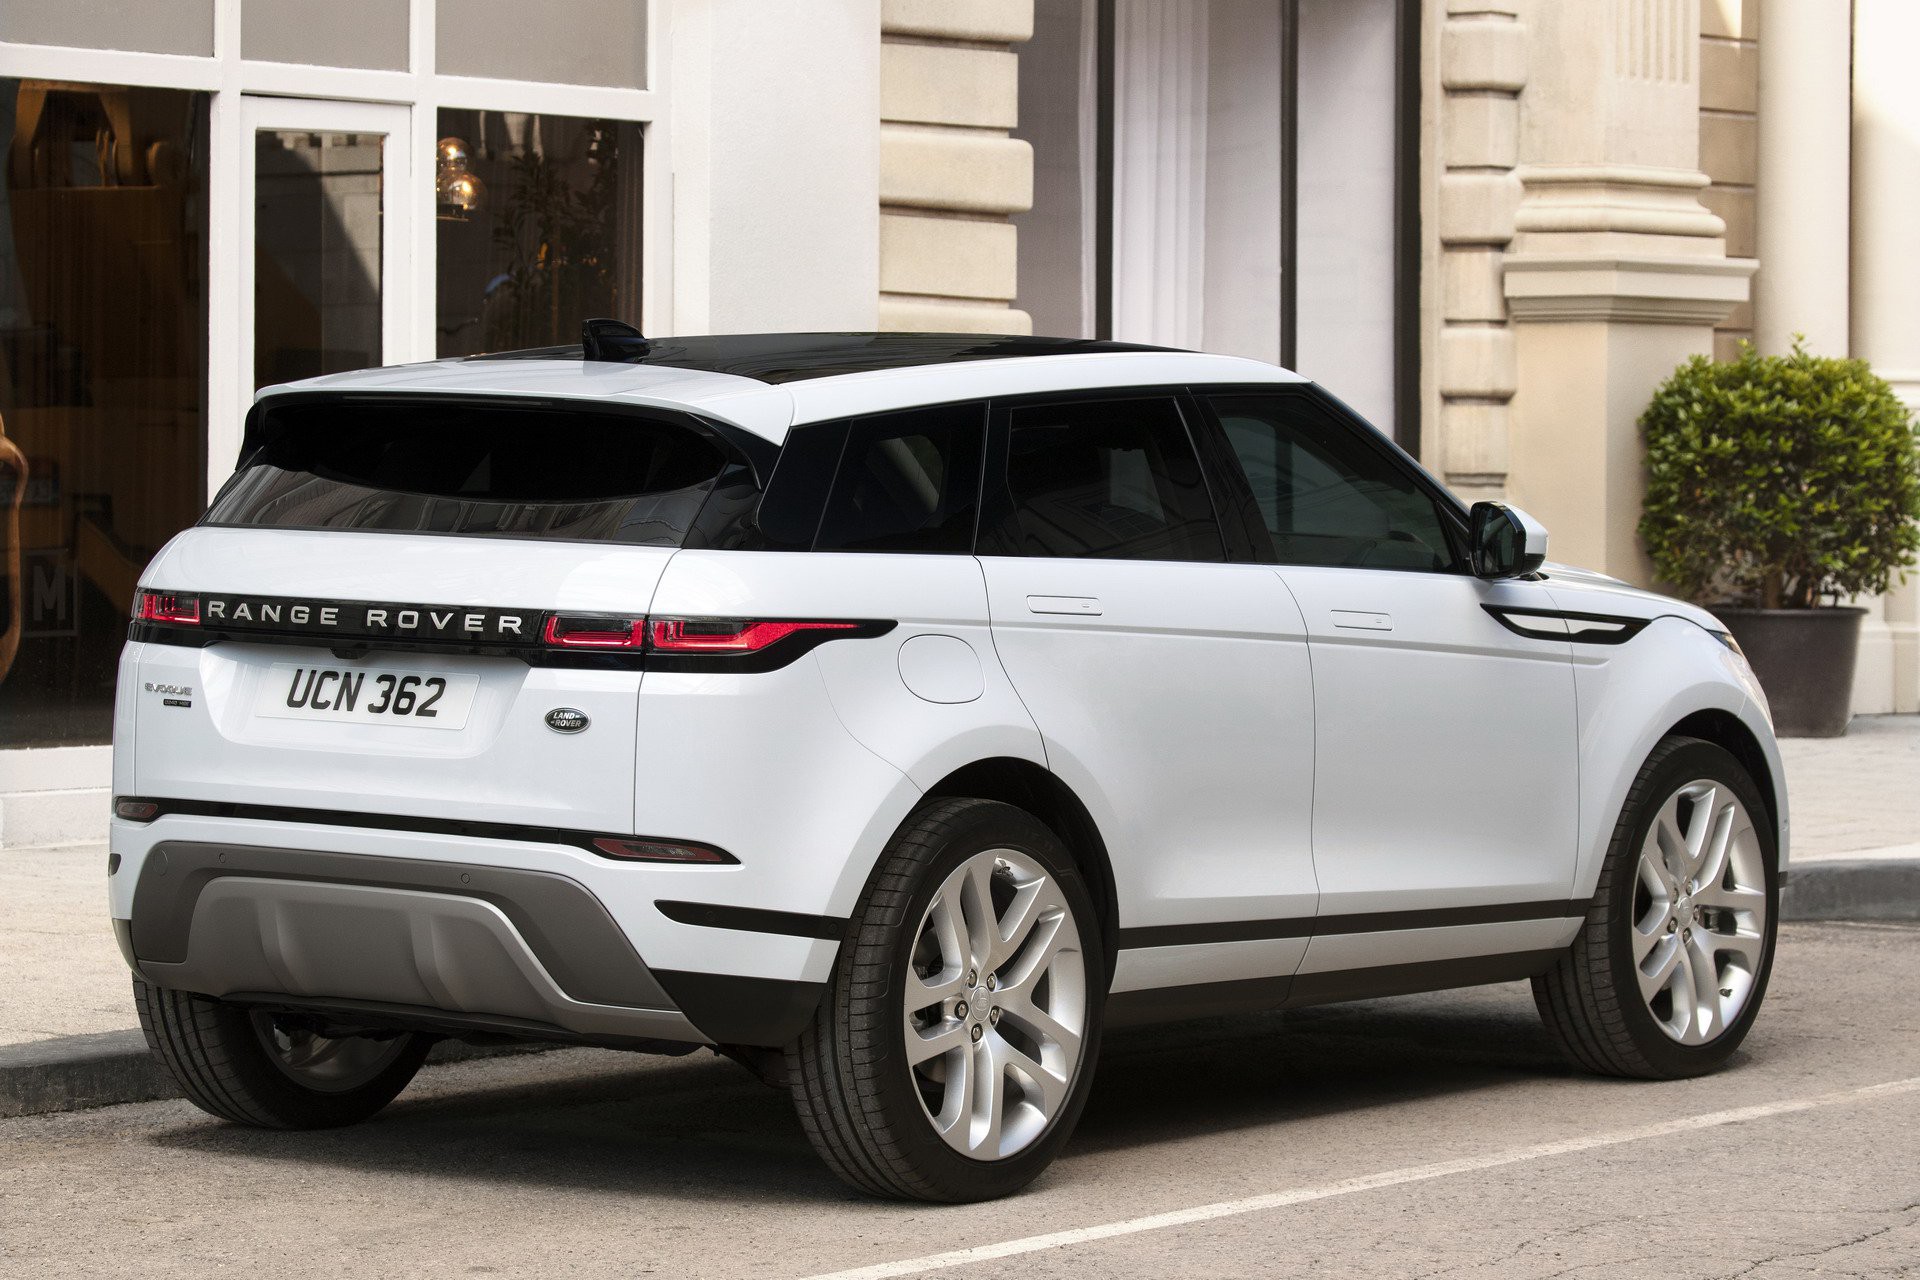 Khám phá chiếc Range Rover Evoque 2019 - một mẫu xe hướng đến sự tinh tế và sang trọng. Thiết kế đẹp mắt kết hợp với công nghệ cao cấp đem đến trải nghiệm thú vị cho bất kỳ ai yêu thích xe hơi. Đừng bỏ lỡ cơ hội để khám phá chi tiết về xe này qua hình ảnh đầy ấn tượng.